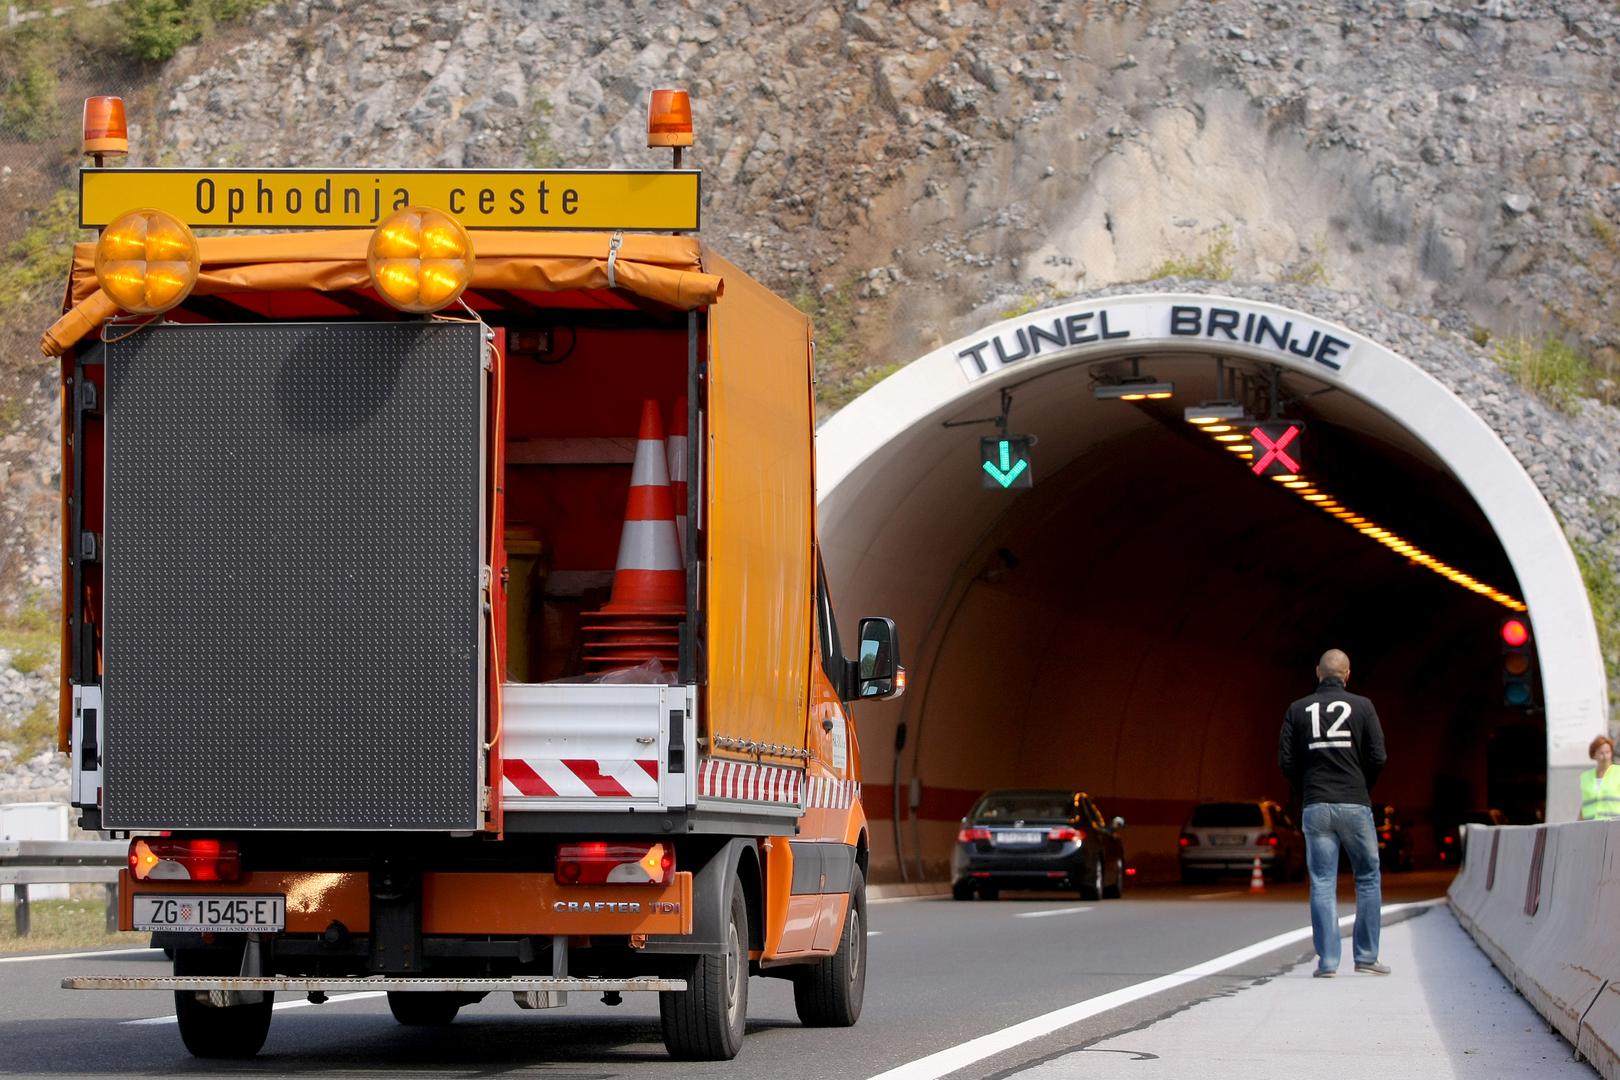 9. Tunel Brinje 1.560 metara: Tunel Brinje, dio autoceste A1 između Male Kapele i Žute Lokve, u prometu je od 2004. godine. Sastoji se od dvije tunelske cijevi dužine 1542 i 1540 metara, s dopuštenom brzinom od 100 km/h. Također, 2007. godine je prepoznat kao najsigurniji tunel u Europi tijekom testiranja Euro TAP-a.